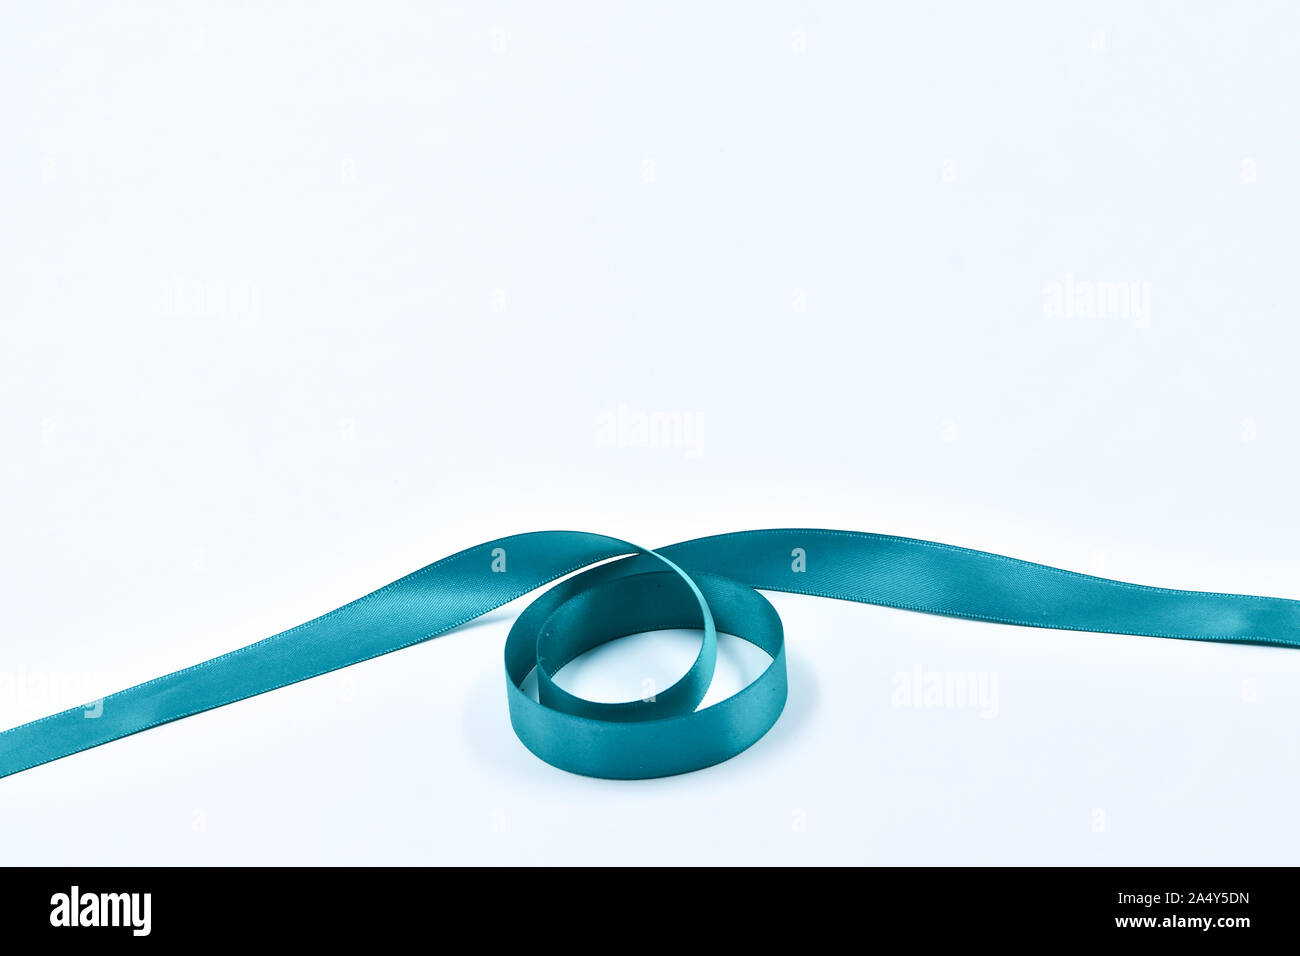 Aquamarine curly ribbon on white background, decorative elements Stock Photo